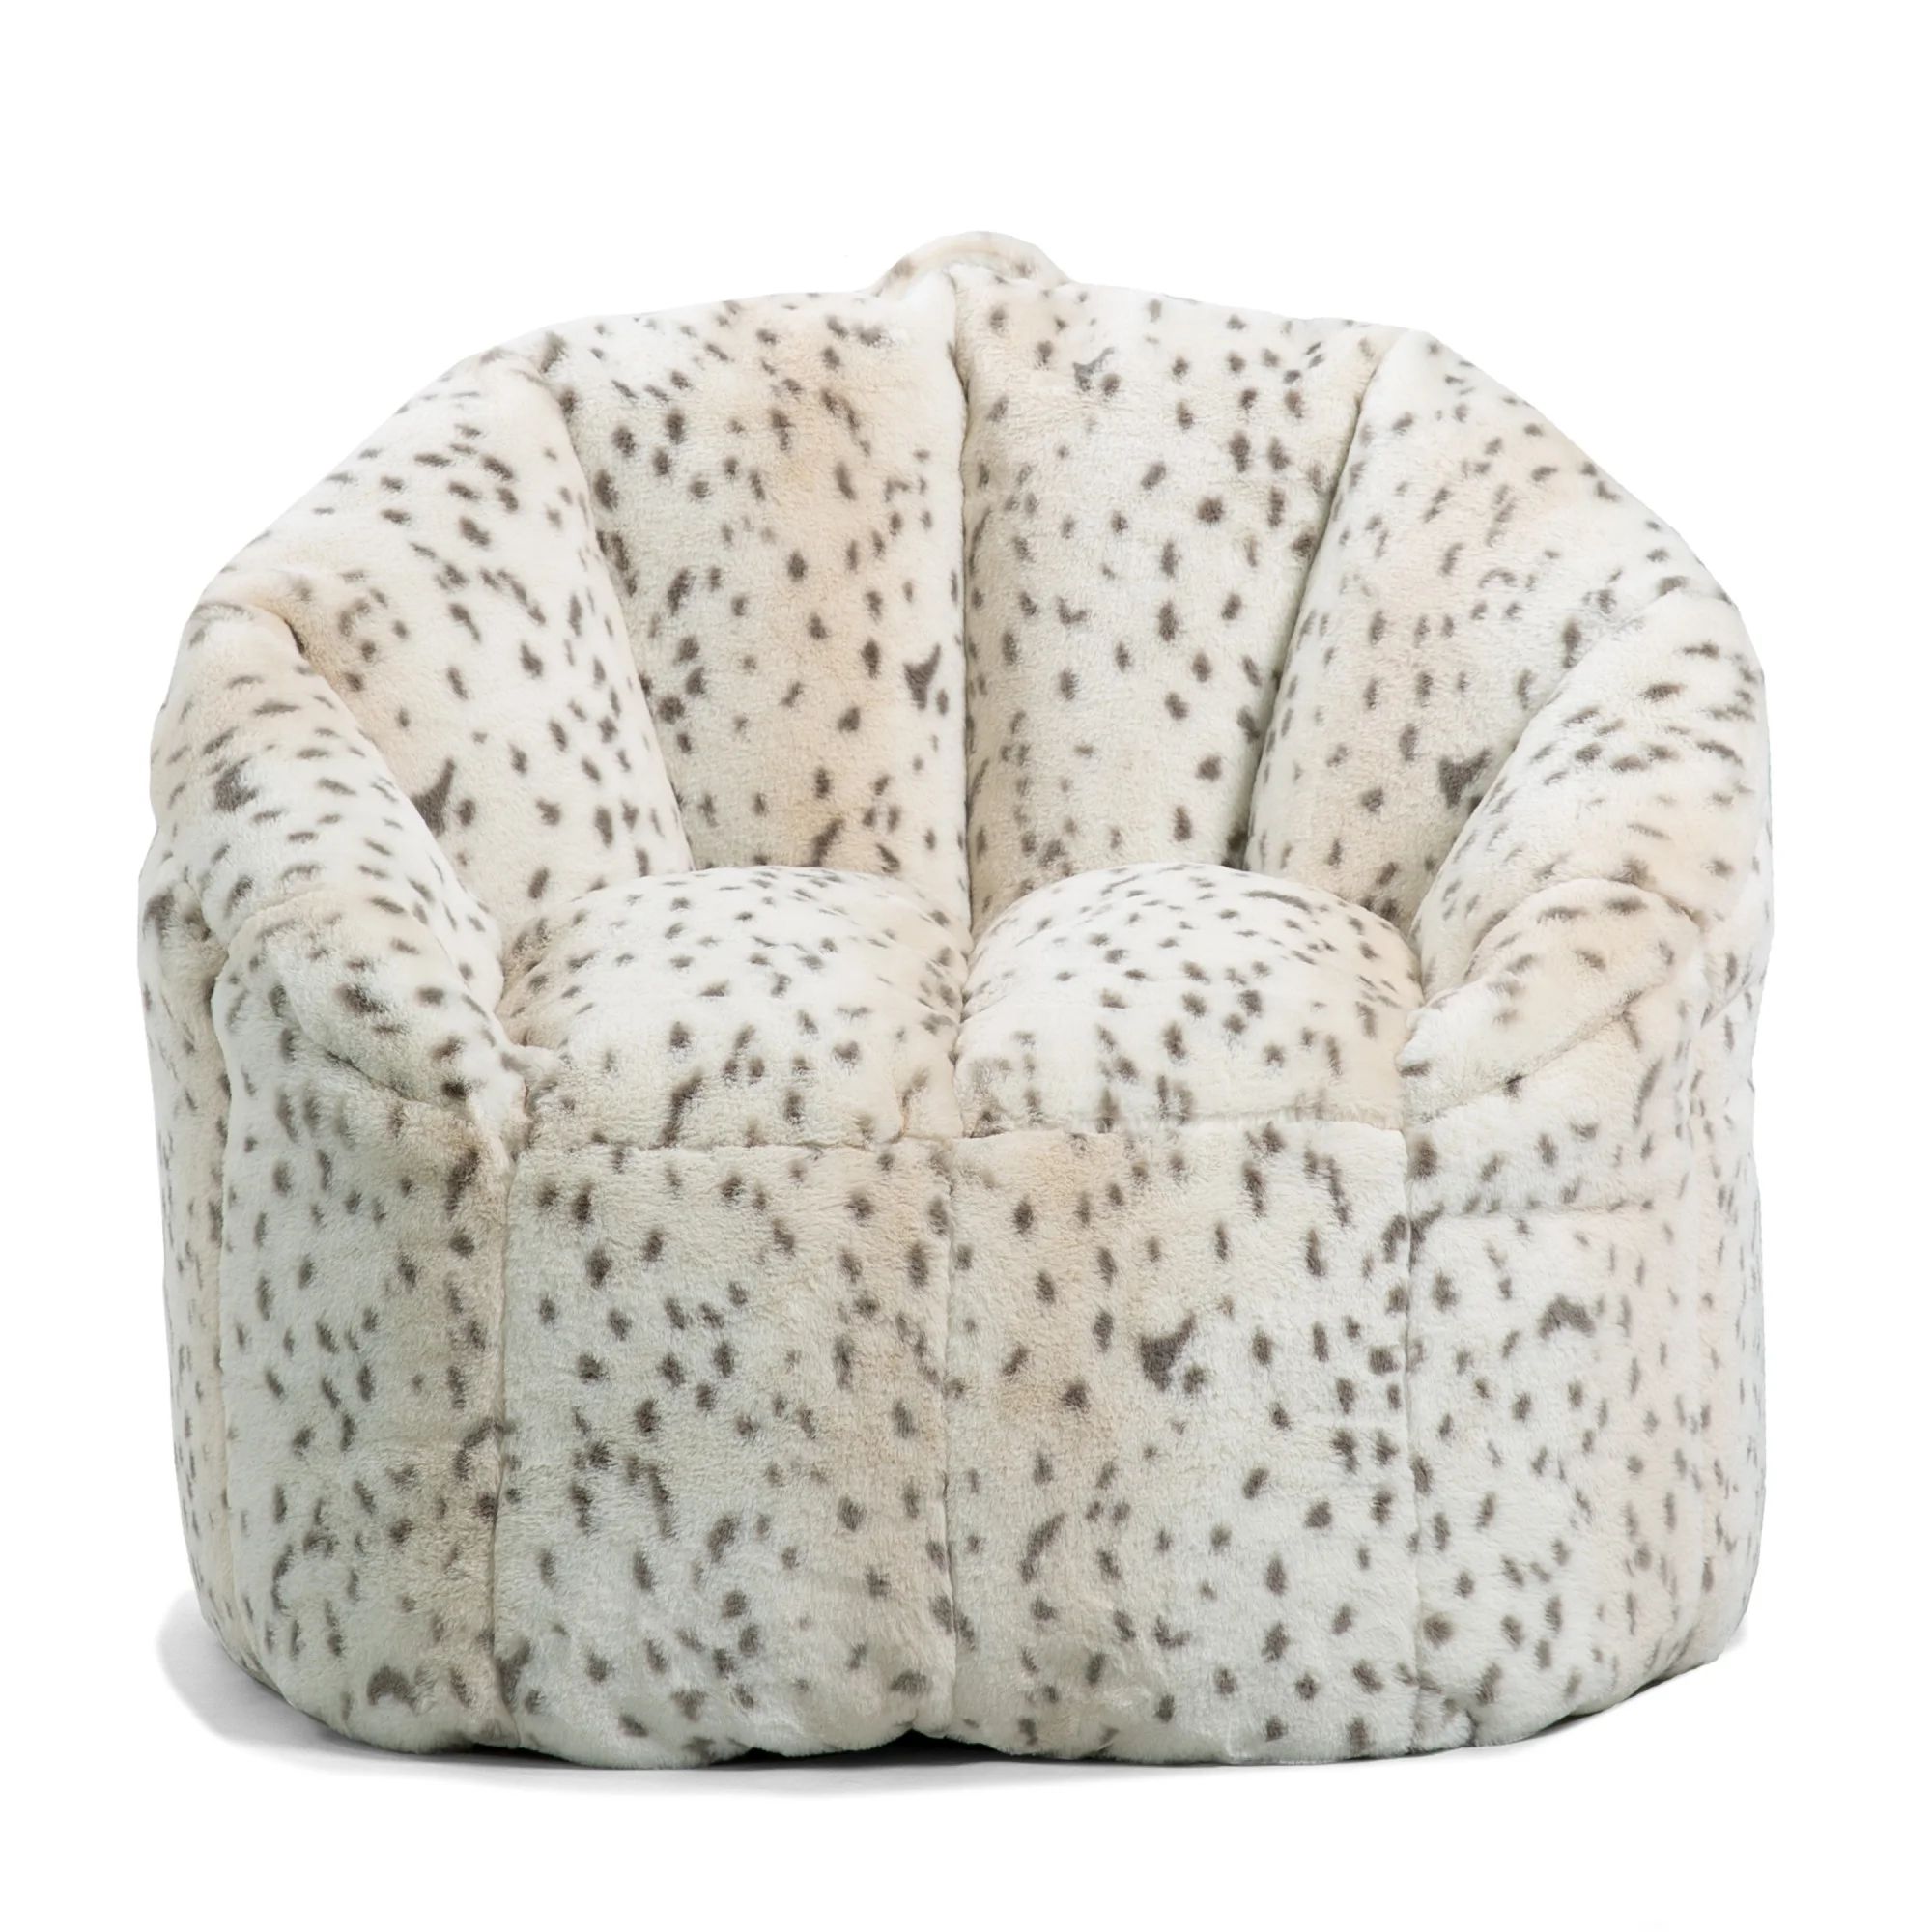 Big Joe Milano Bean Bag Chair, Leopard Print Super Soft Fur, Faux Fur, 2.5 feet | Walmart (US)